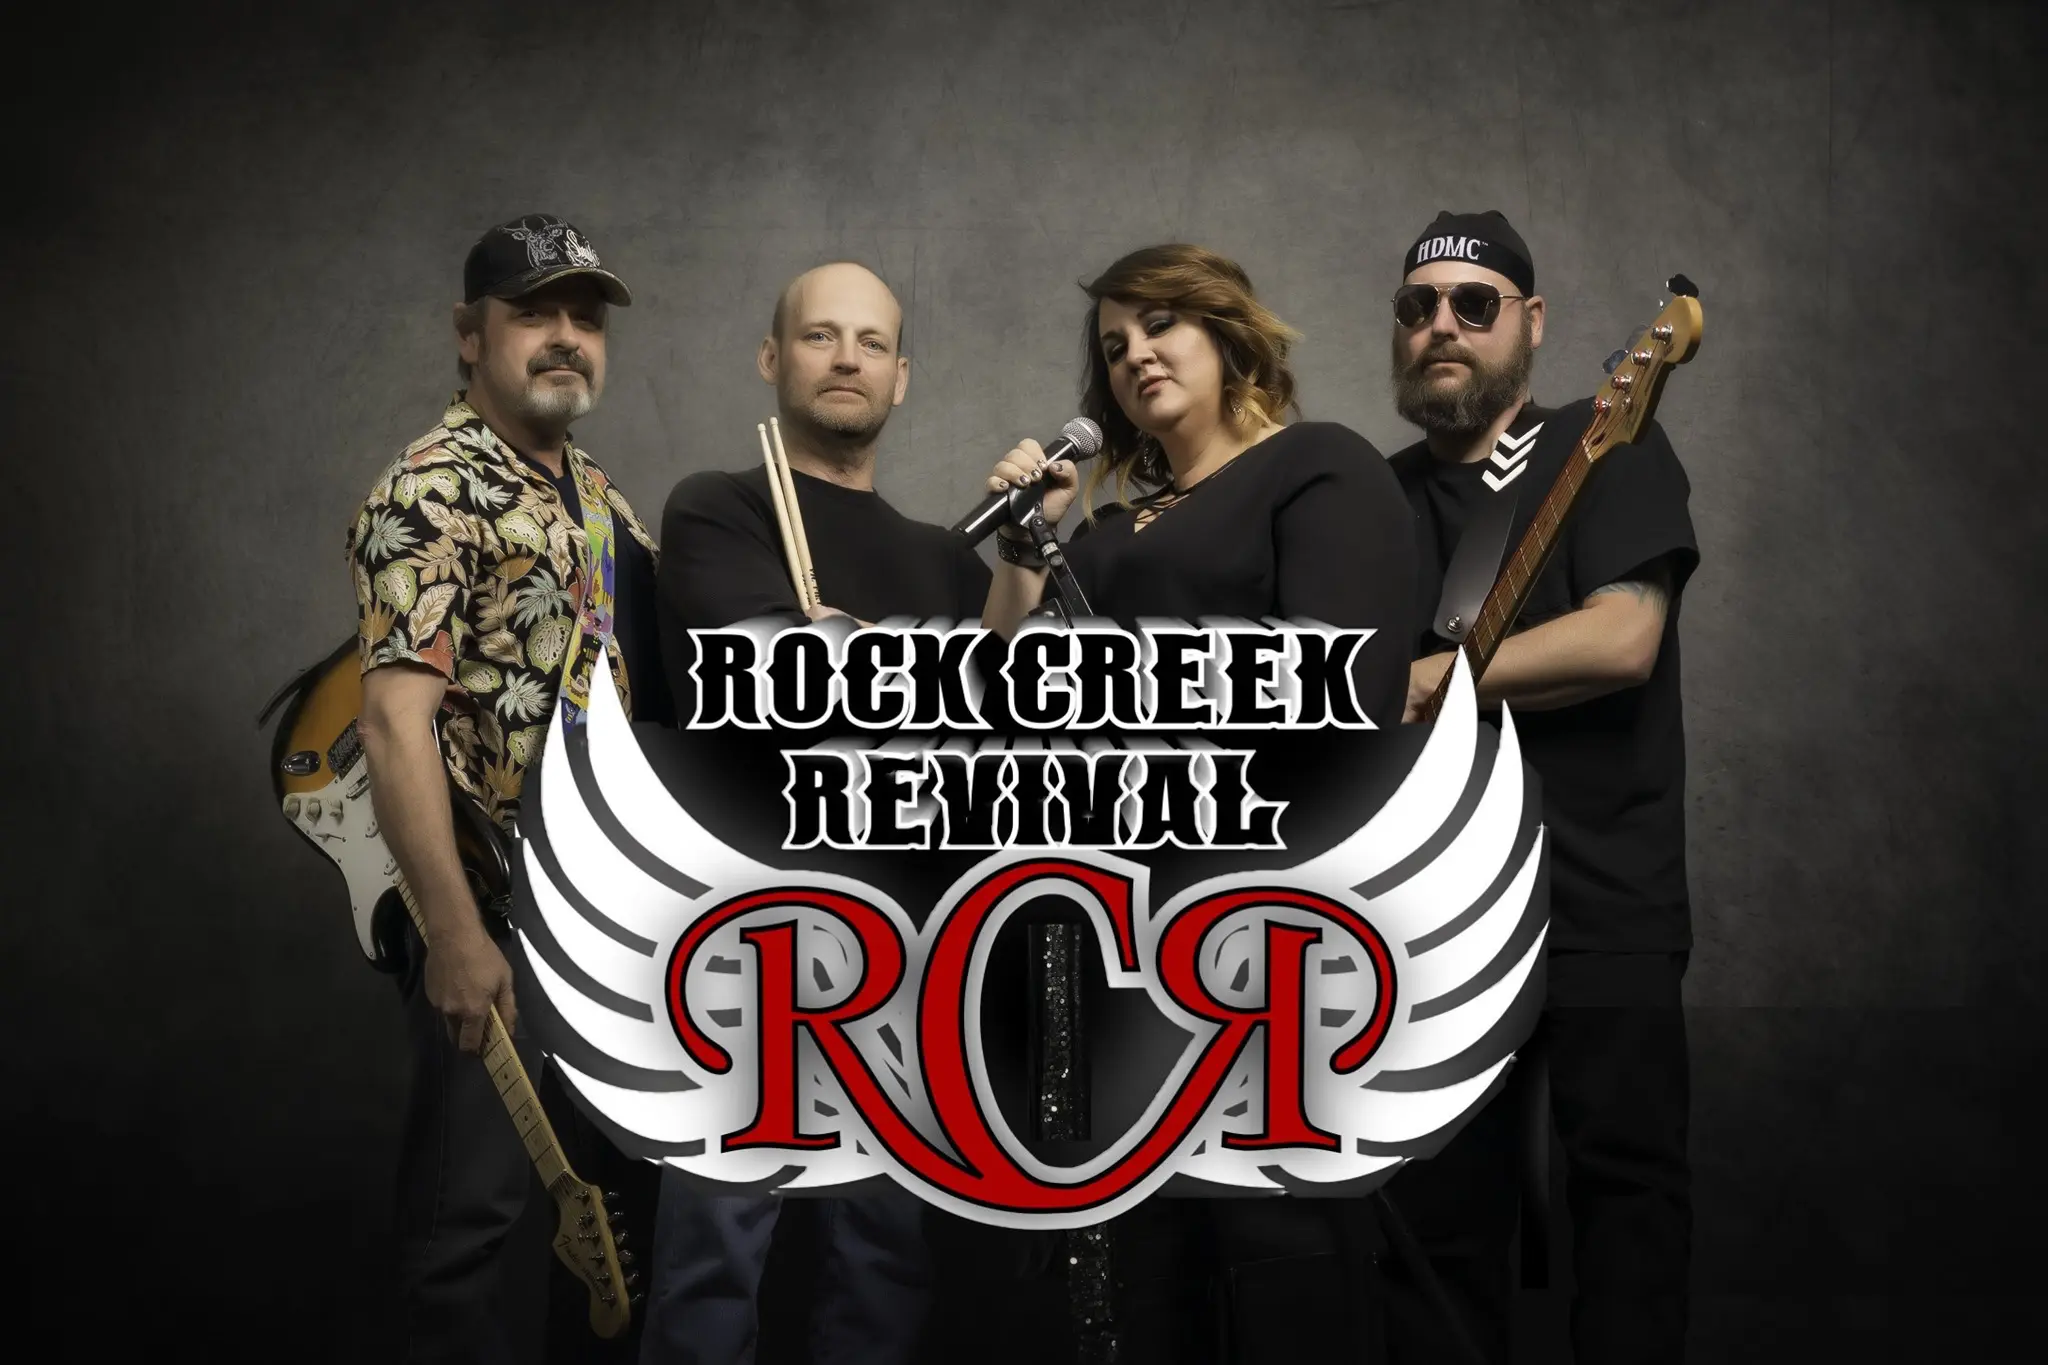 Rock Creek Revival band logo & four band members